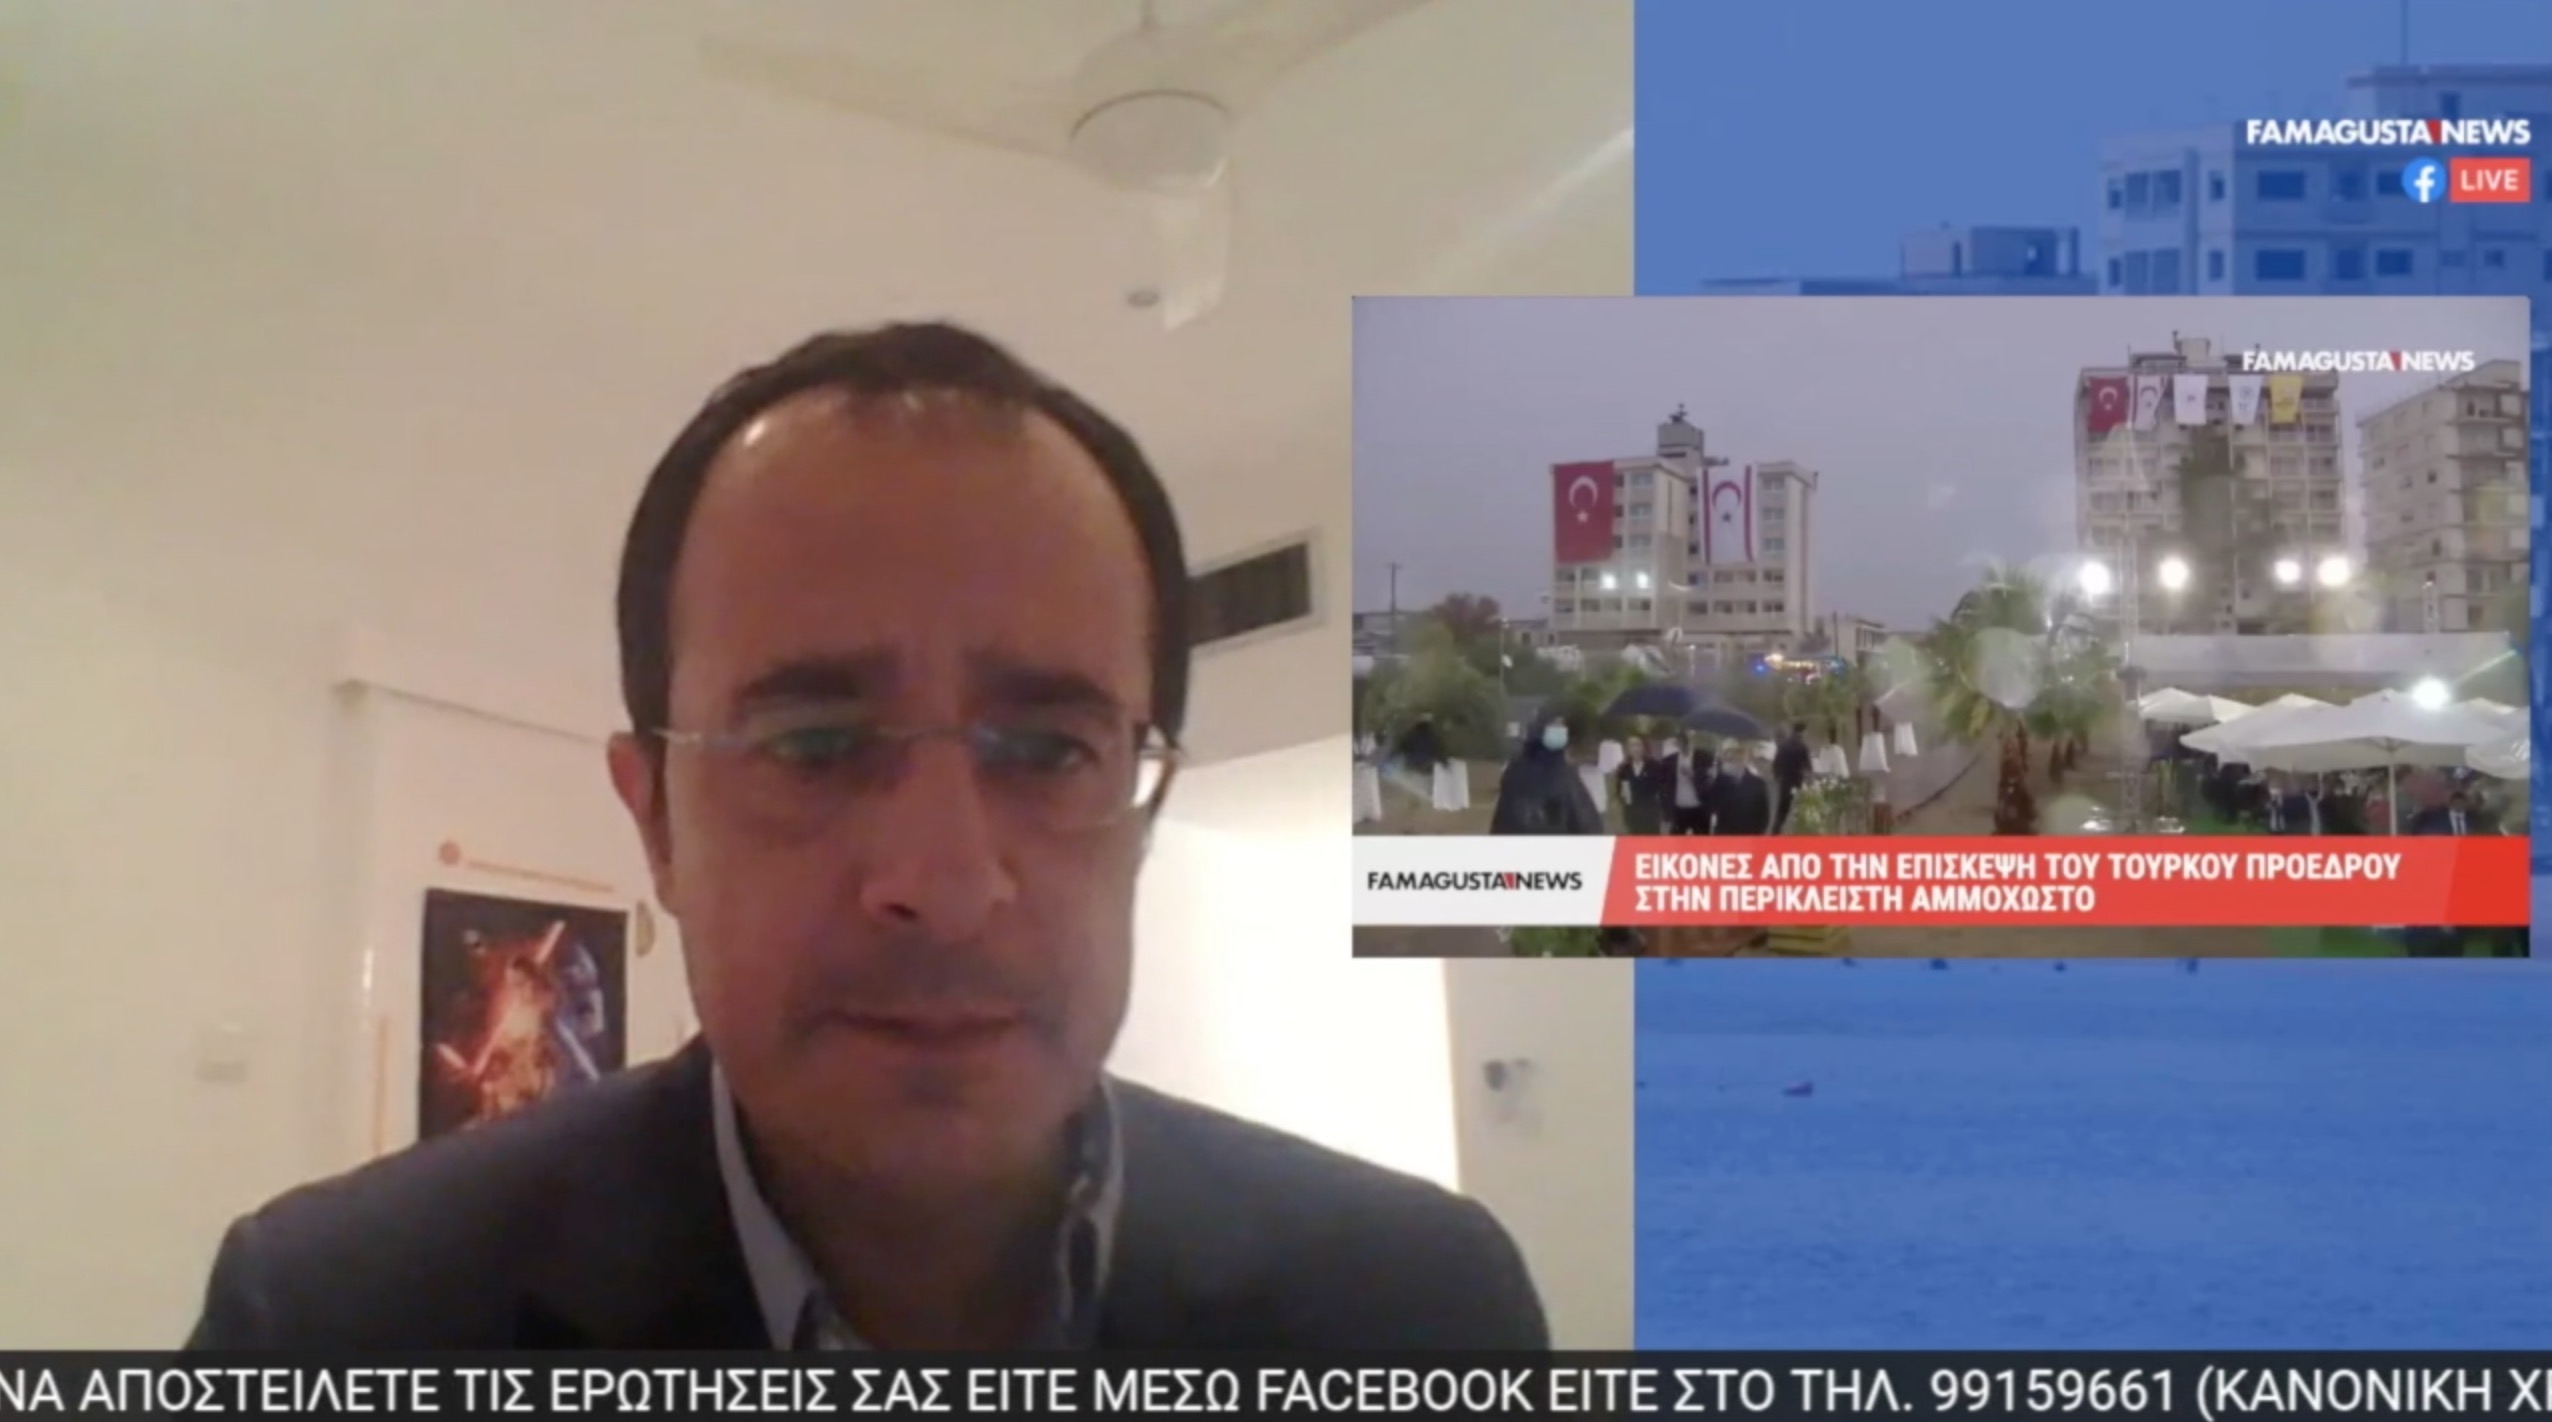 Screenshot 2020 11 23 19.28.07 FamagustaNews TV